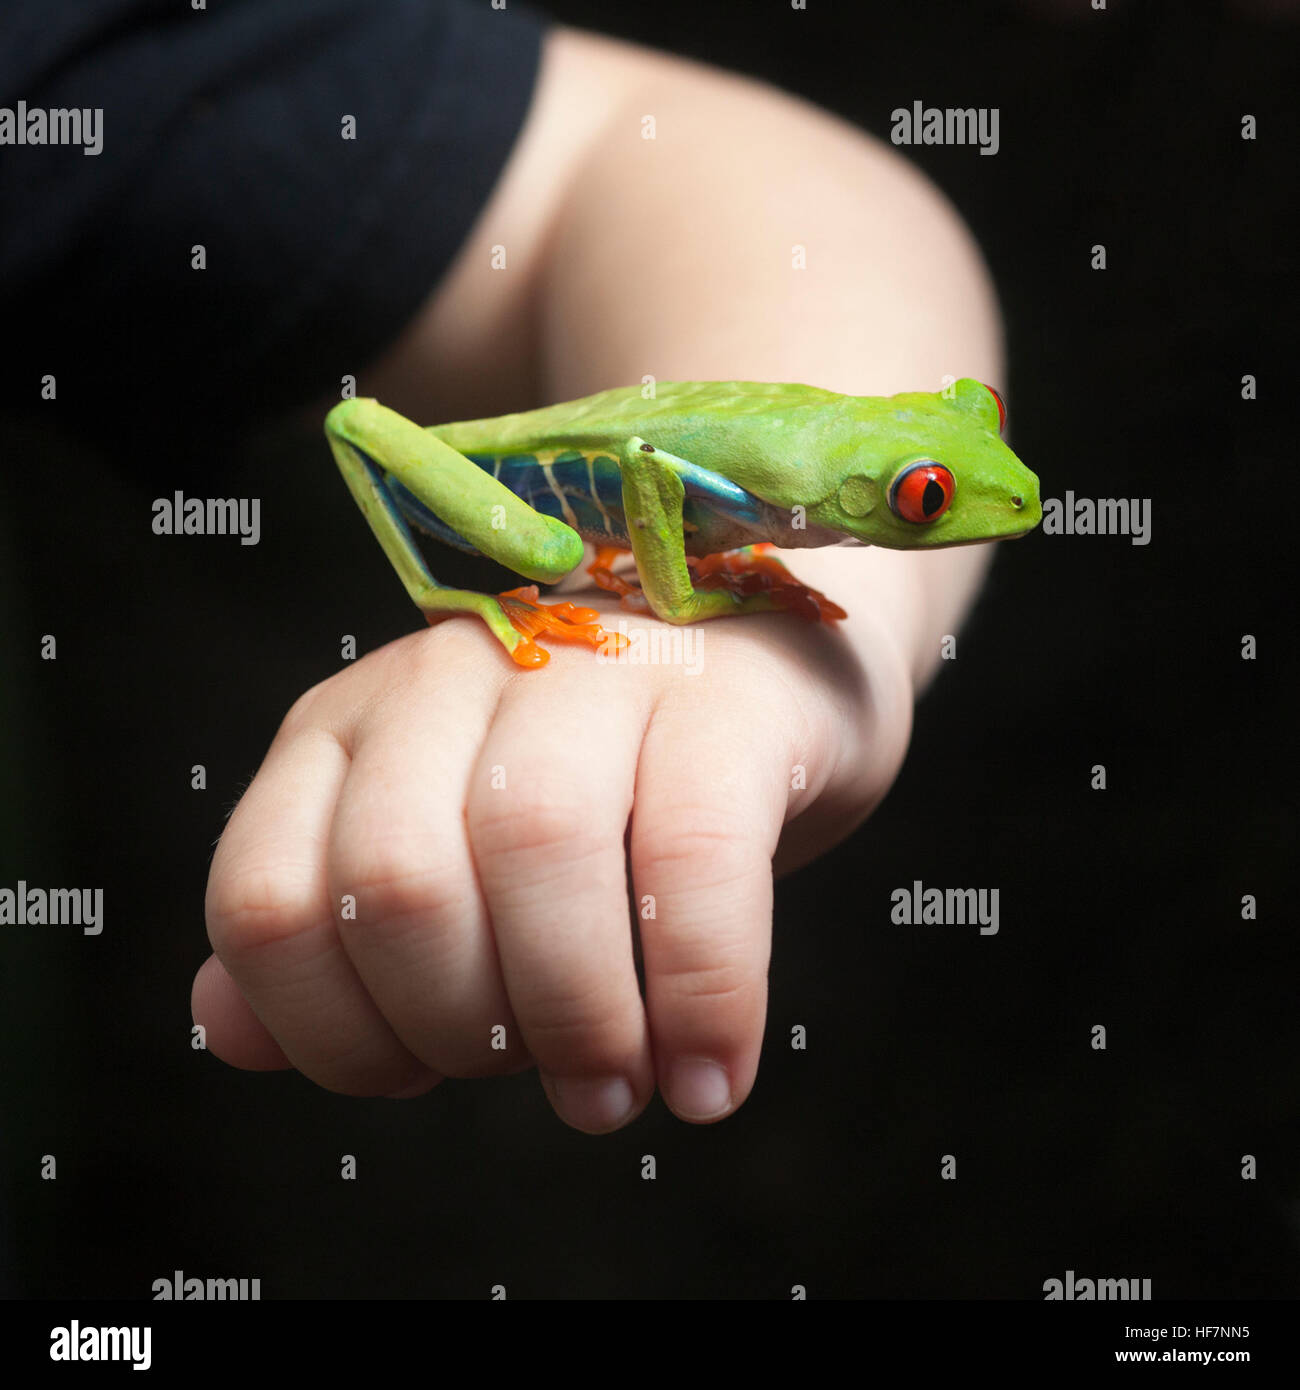 Rana di albero con occhi rossi (Agalichnis callidryas) in mano al ragazzo Foto Stock